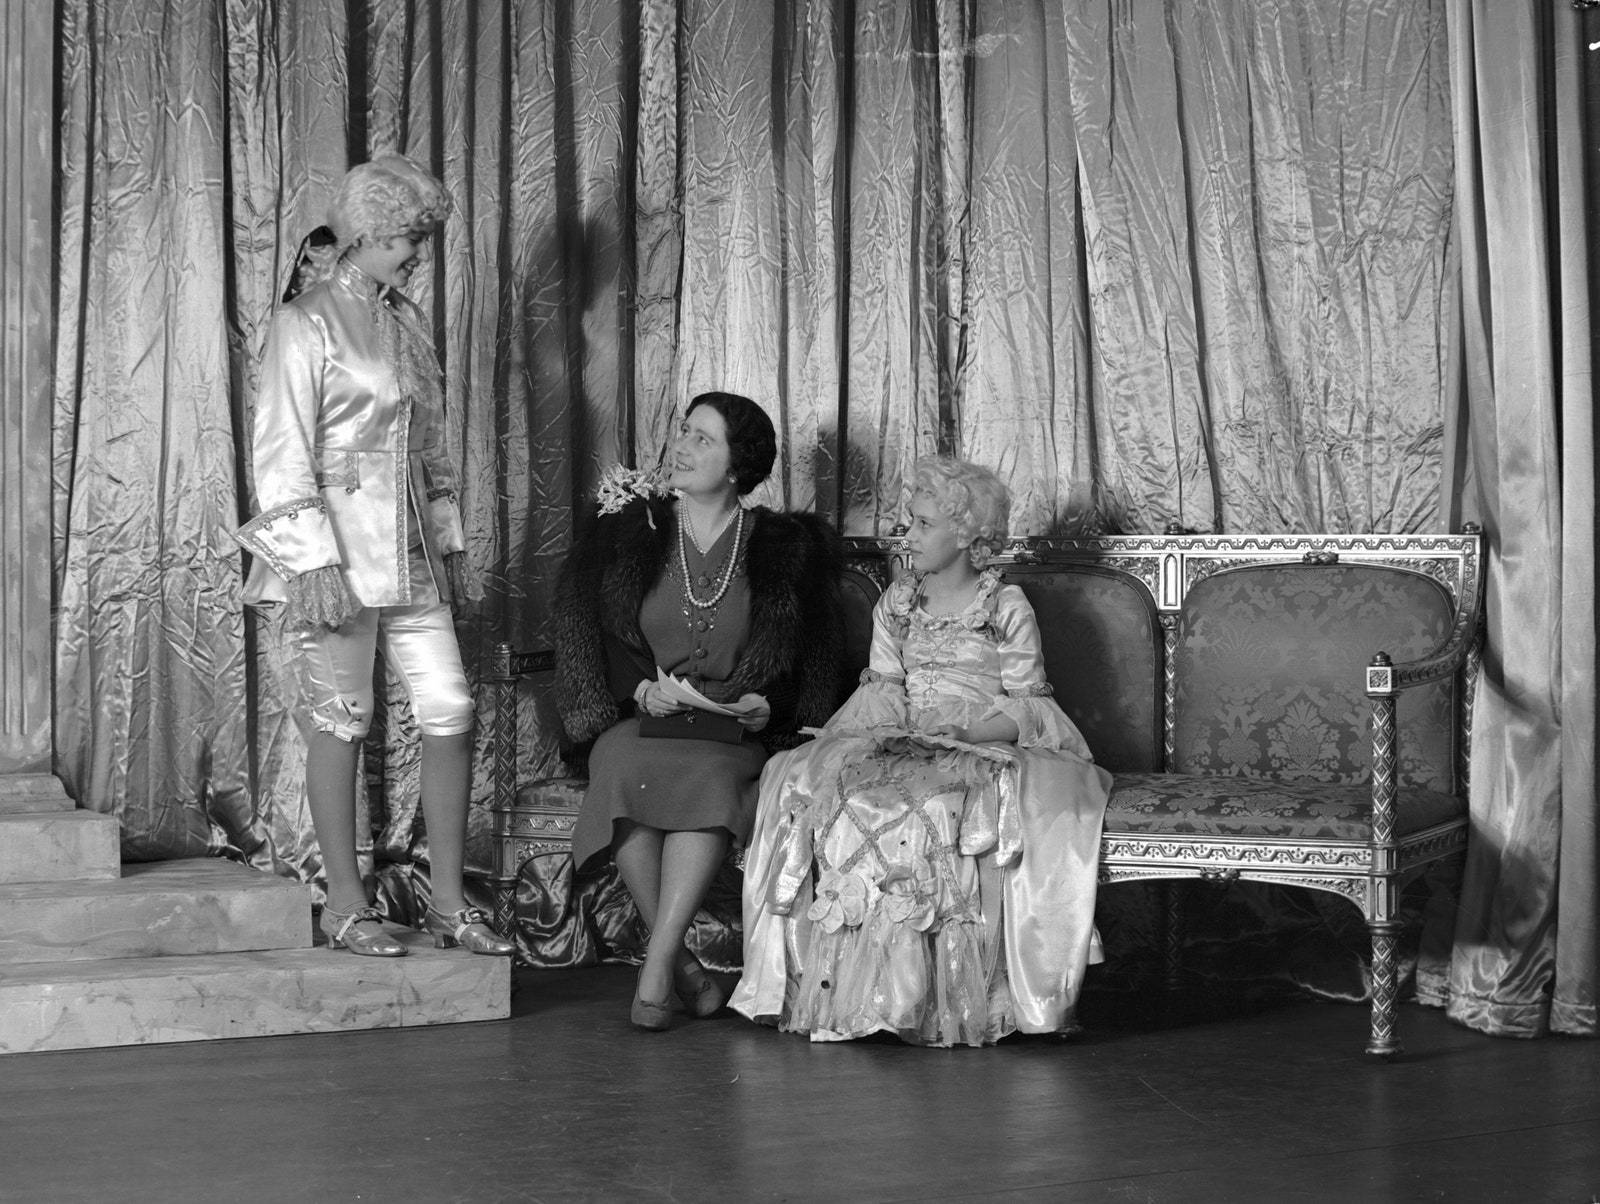 Księżniczki Elżbieta i Małgorzata wystawiały w Windsorze świąteczne pantomimy w czasie wojny. Wtedy u przyszłej królowej rozwinęła się matczyna opiekuńczość wobec młodszej siostry. Już w roku 1936 10-letnia Elżbieta pisała liściki do sześcioletniej Małgorzaty, w których przypominała jej, kto będzie oczekiwał kartek z podziękowaniami za prezenty gwiazdkowe: „Tennikoit – Tata. Broszka – Mamusia. Kalendarz – Babcia. Srebrny dzbanek do kawy, zegar, układanka – od Lilibet dla Małgorzaty”.
Lisa Sheridan/Getty Images